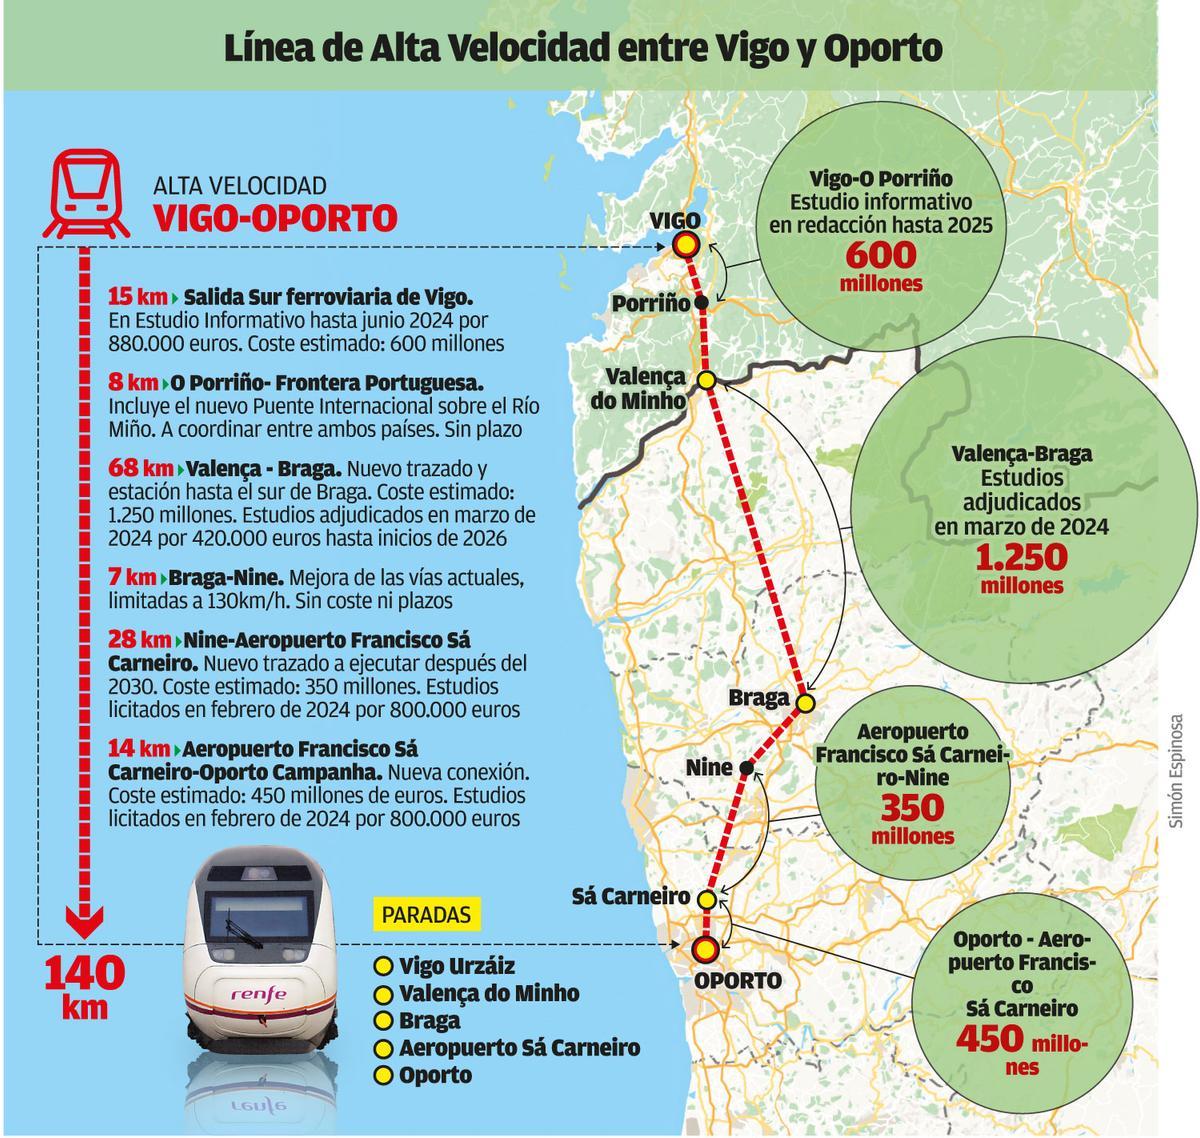 Línea de Alta Velocidad entre Vigo y Oporto.